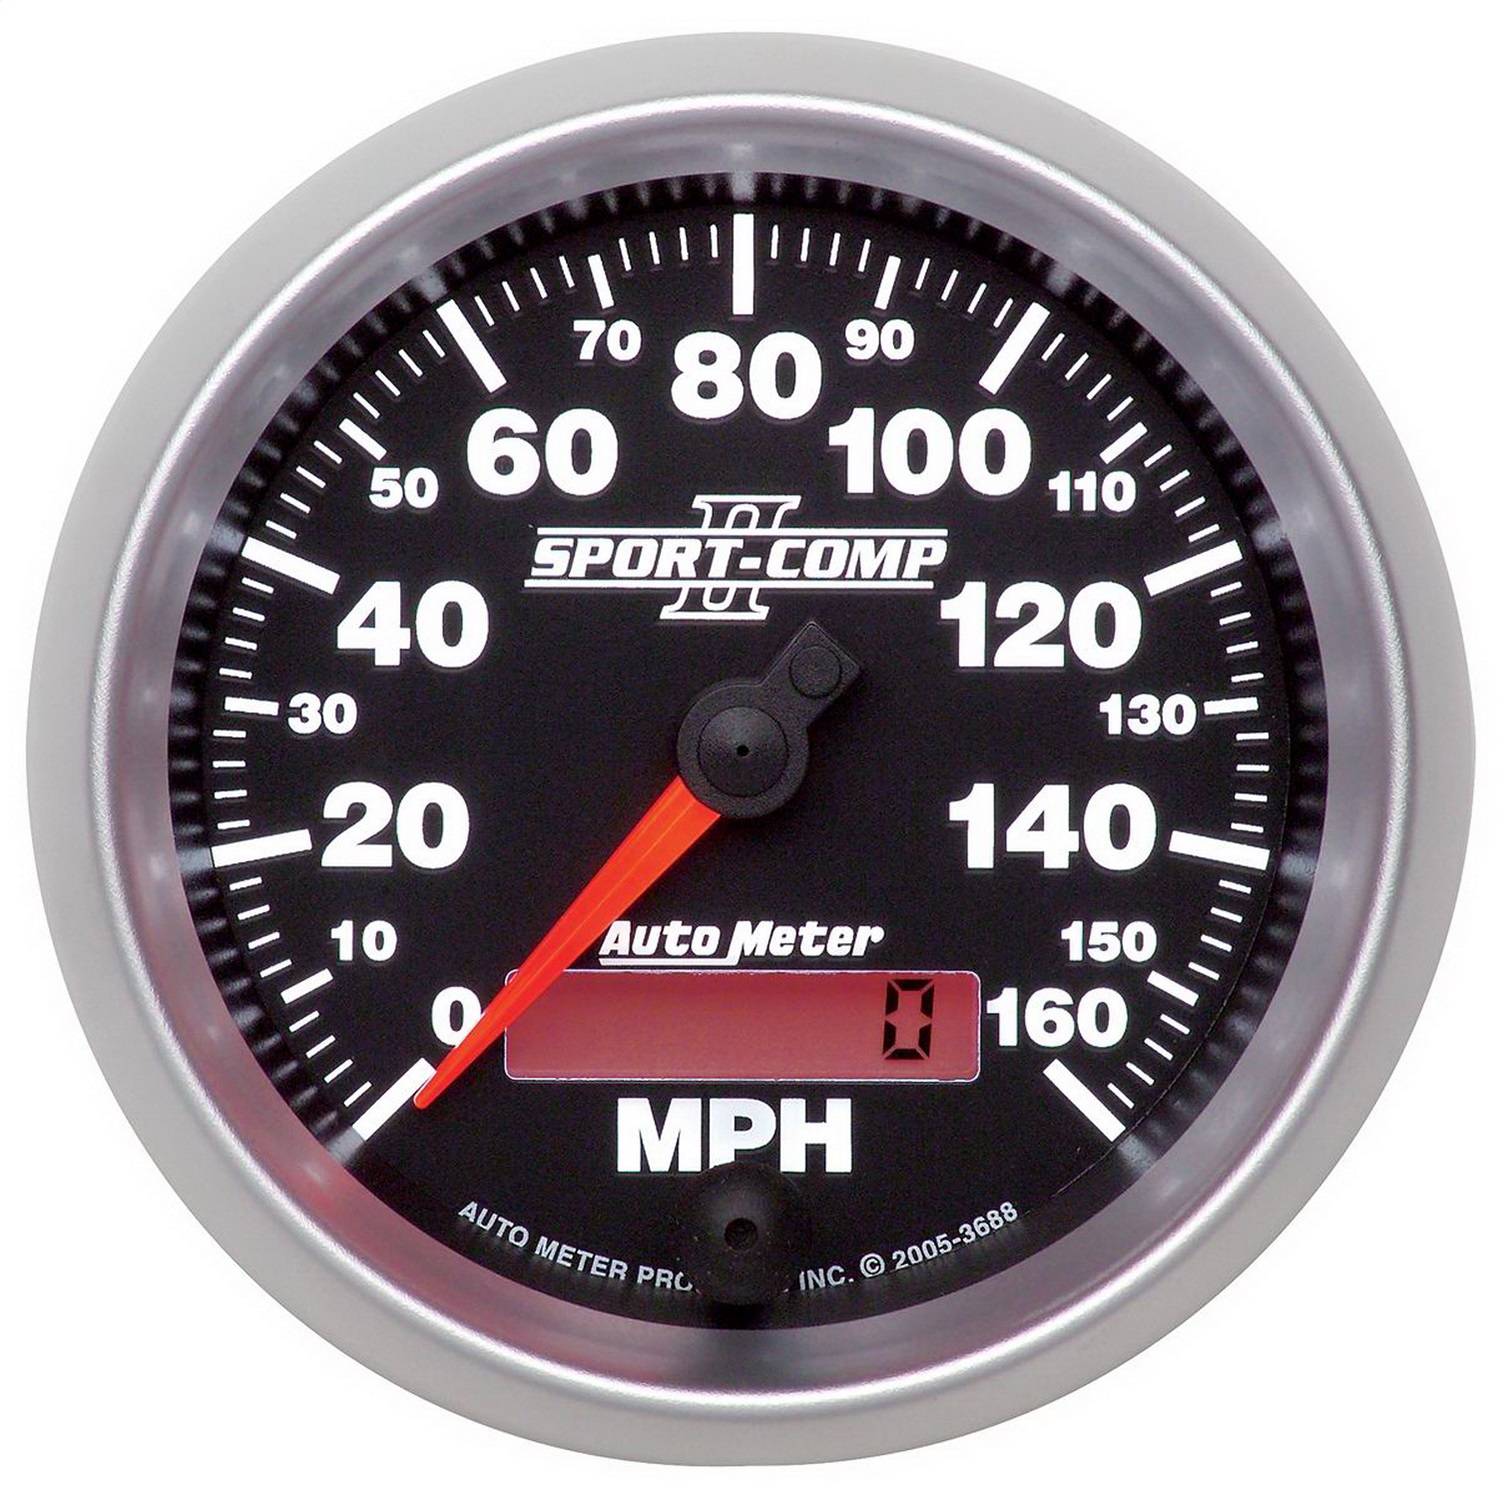 Auto Meter Auto Meter 3688 Sport-Comp II; Programmable Speedometer